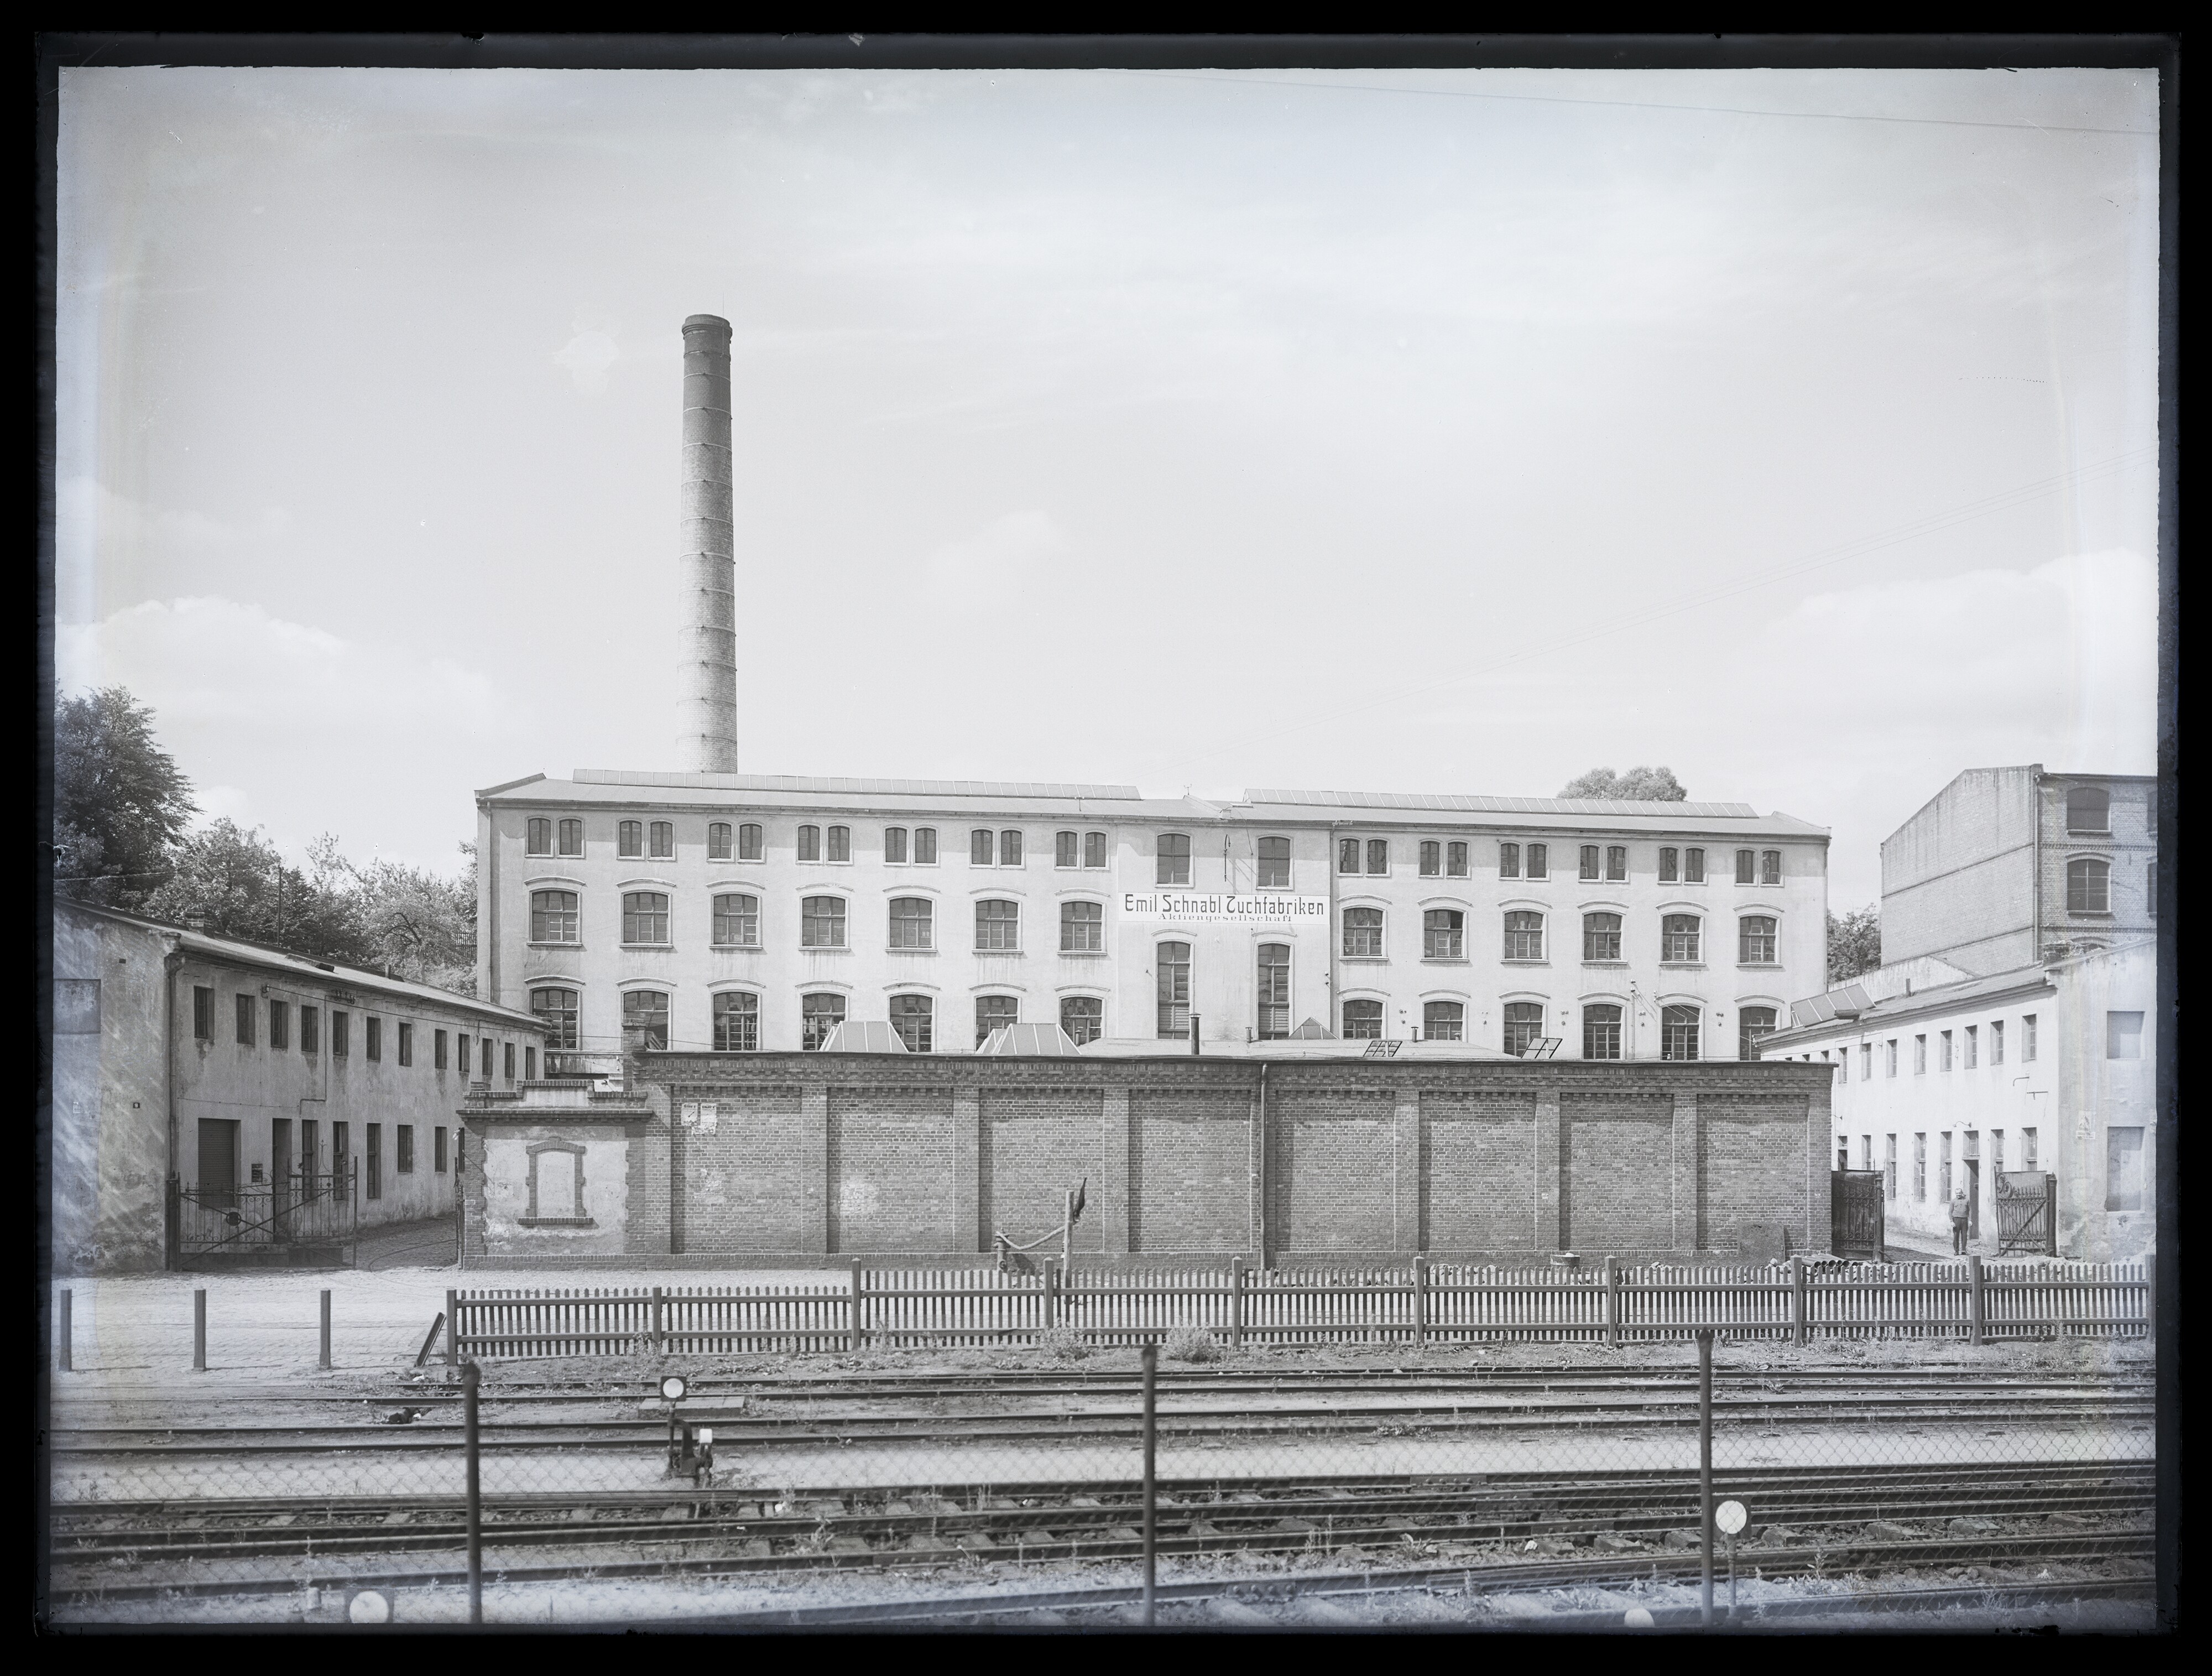 Außenansicht der "Emil Schnabl Tuchfabriken Aktiengesellschft" in Spremberg. (Stadtmuseum Cottbus CC BY-NC-SA)